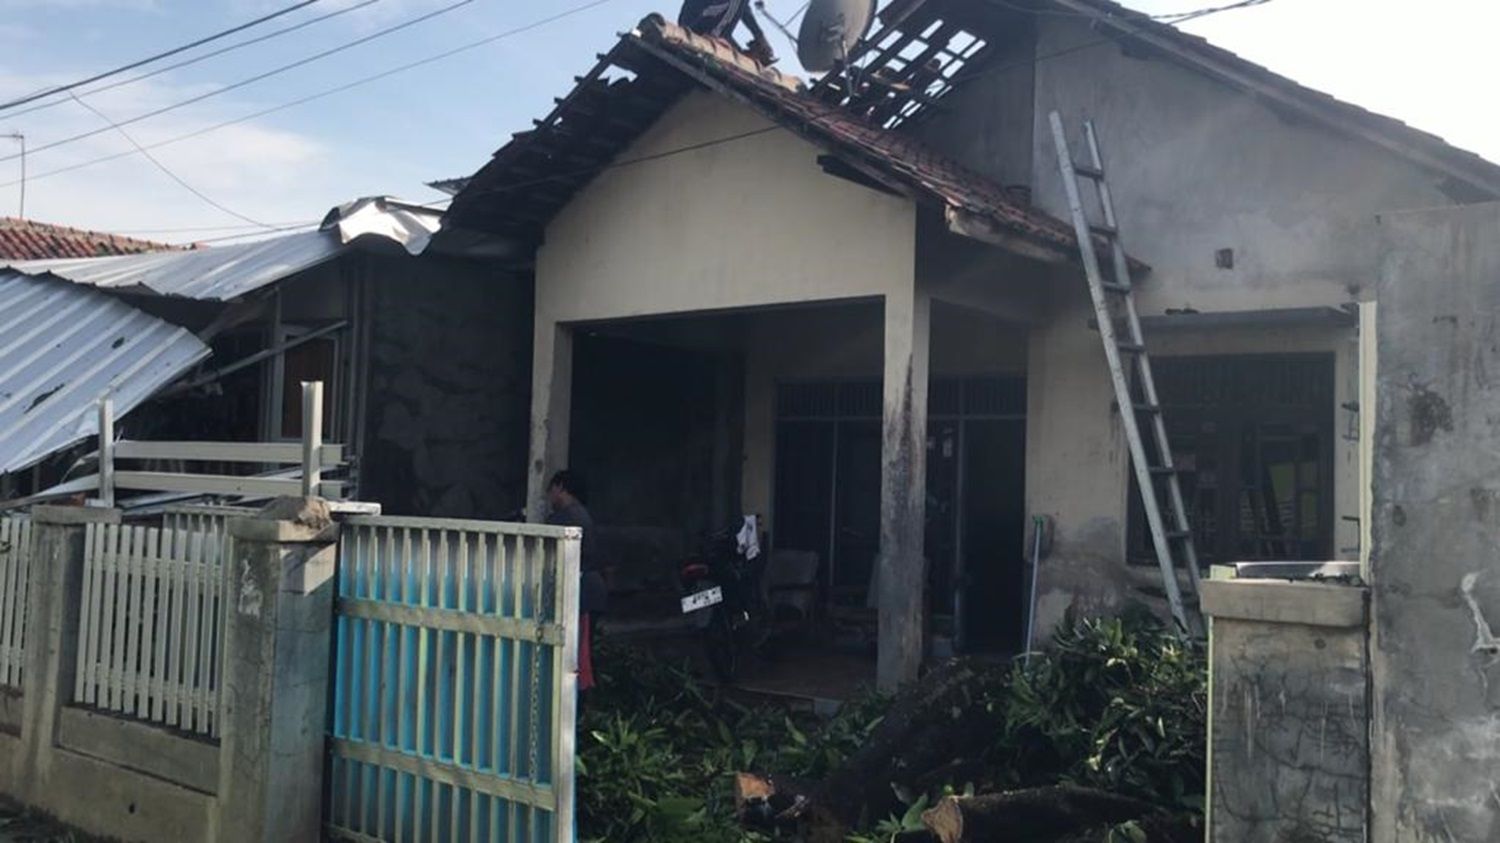 Rumah warga rusak akibat angin kencang di Desa Pasindangan, Kecamatan Jatitujuh, Kabupaten Majalengka.